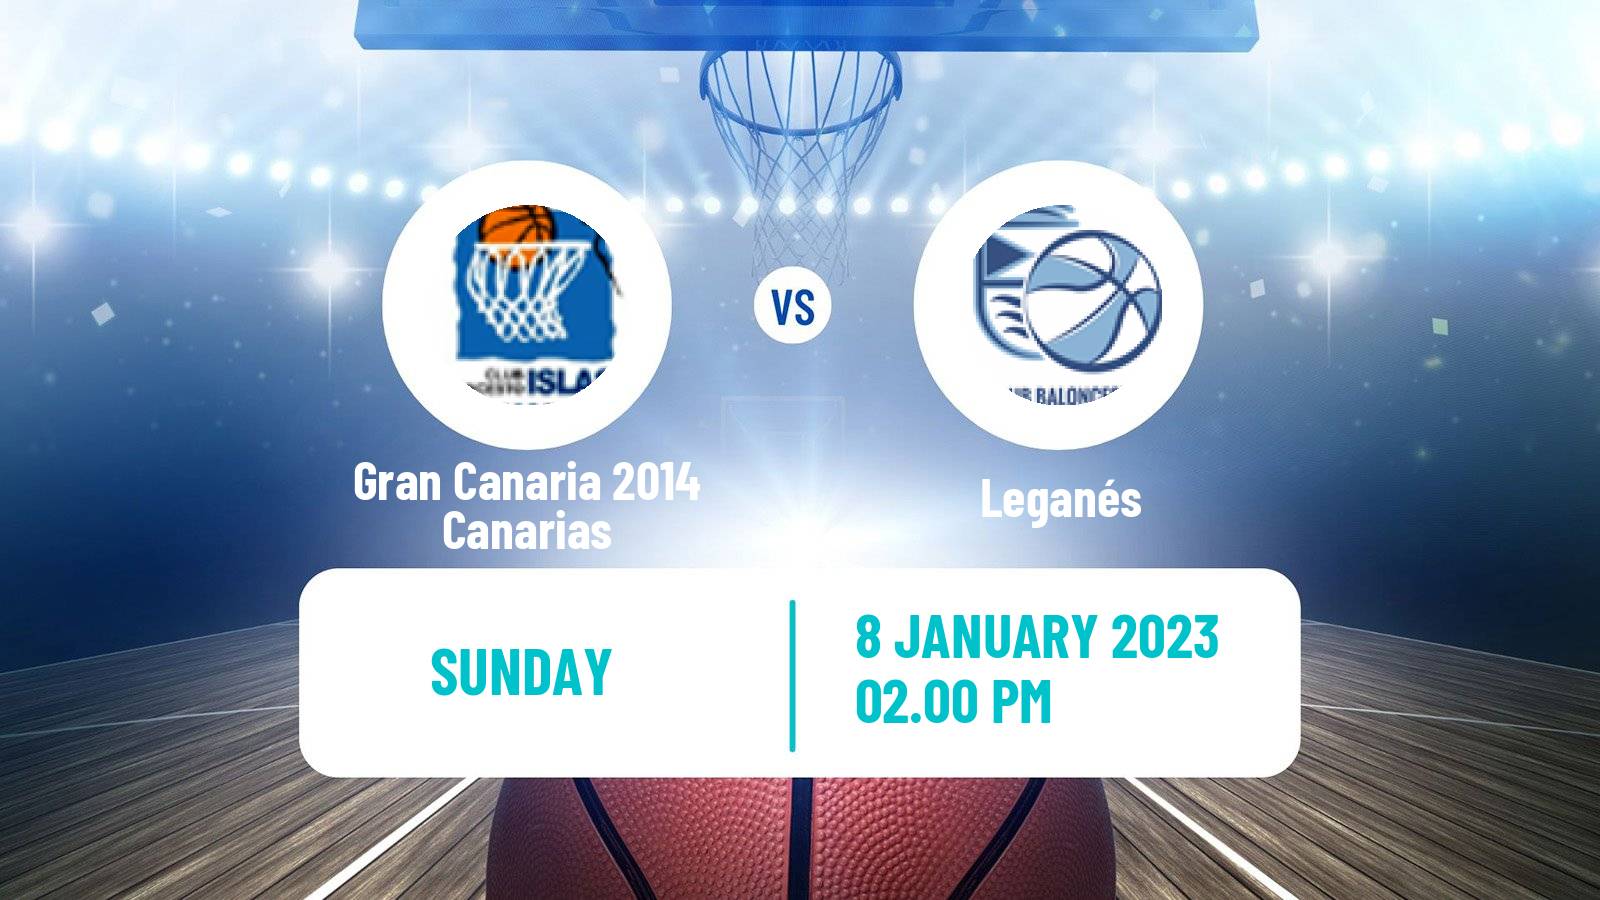 Basketball Spanish Liga Femenina Basketball Gran Canaria 2014 Canarias - Leganés